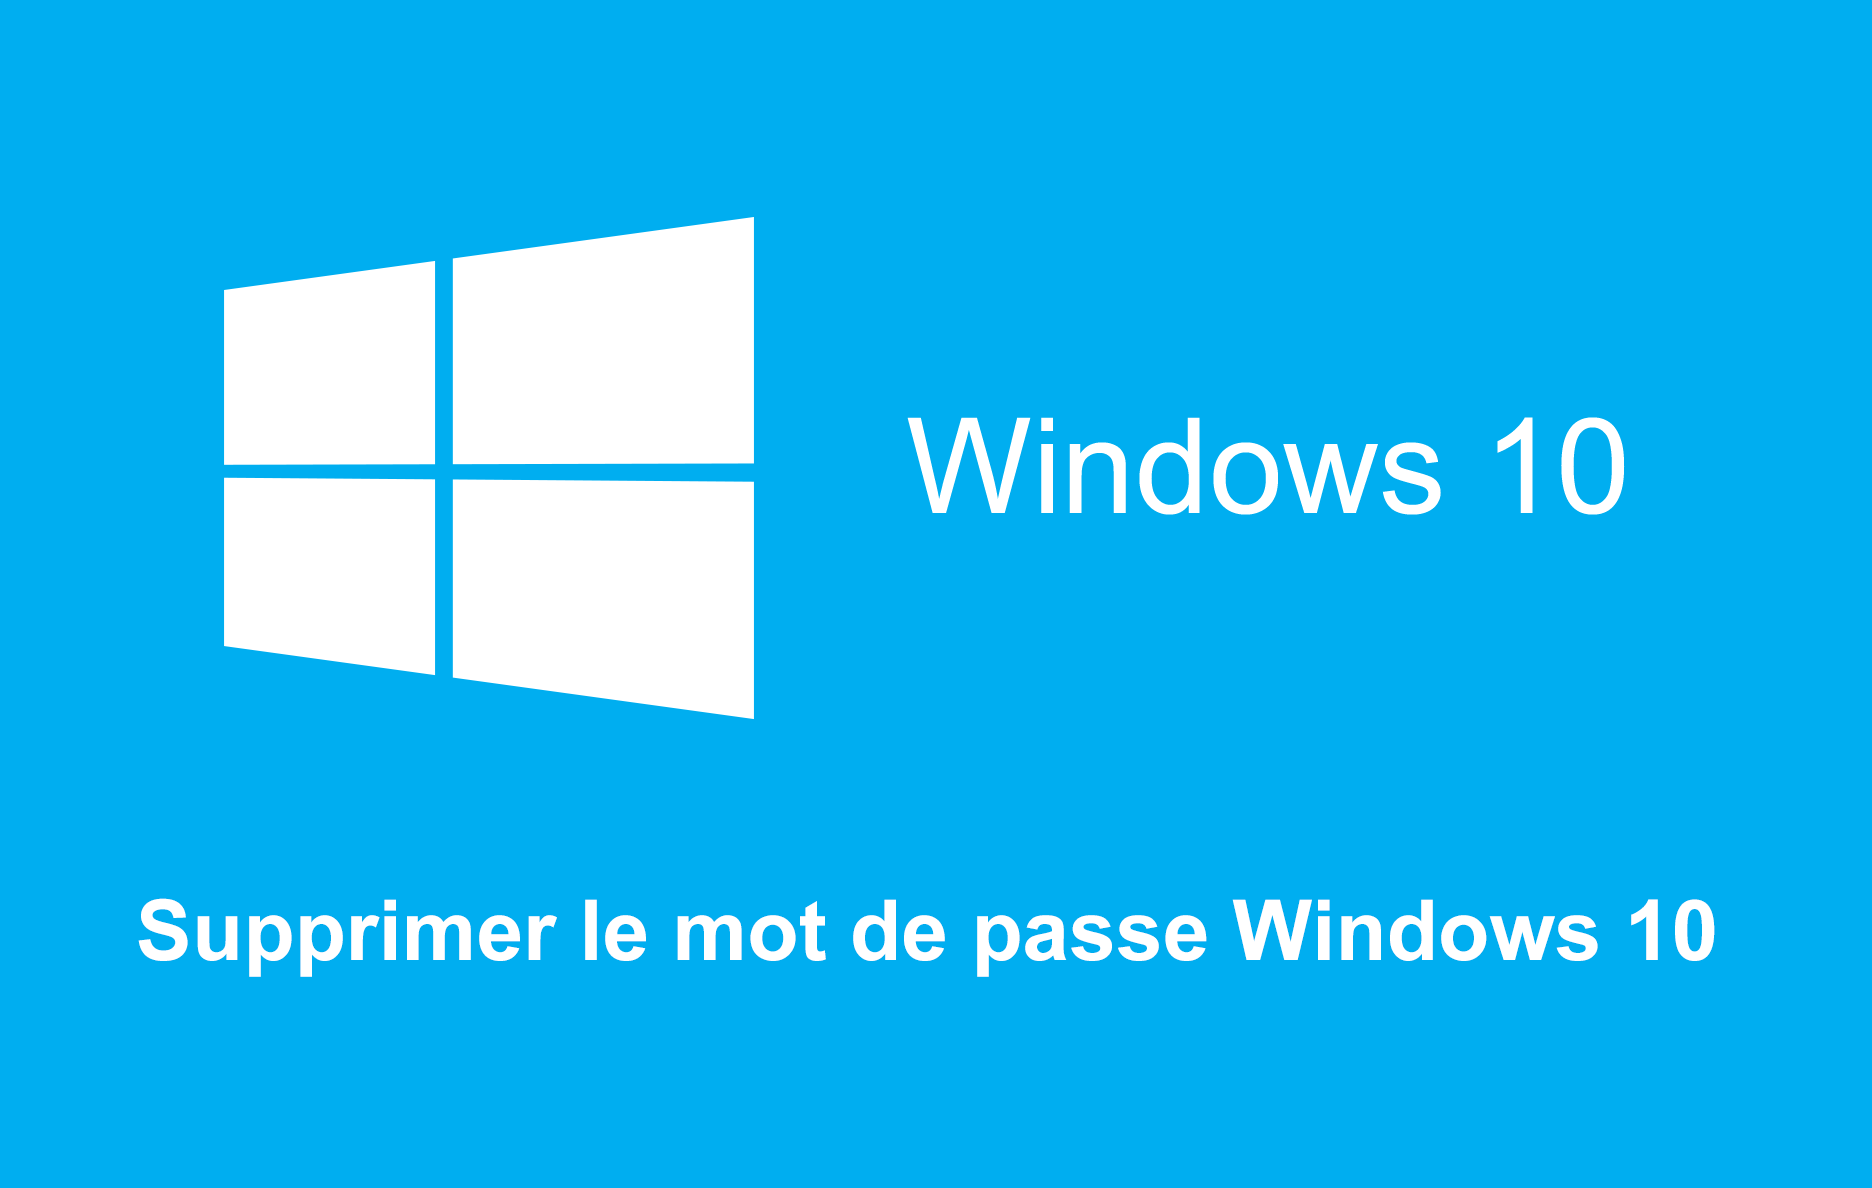 Supprimer-le-mot-de-passe-de-connexion-sous-Windows-10